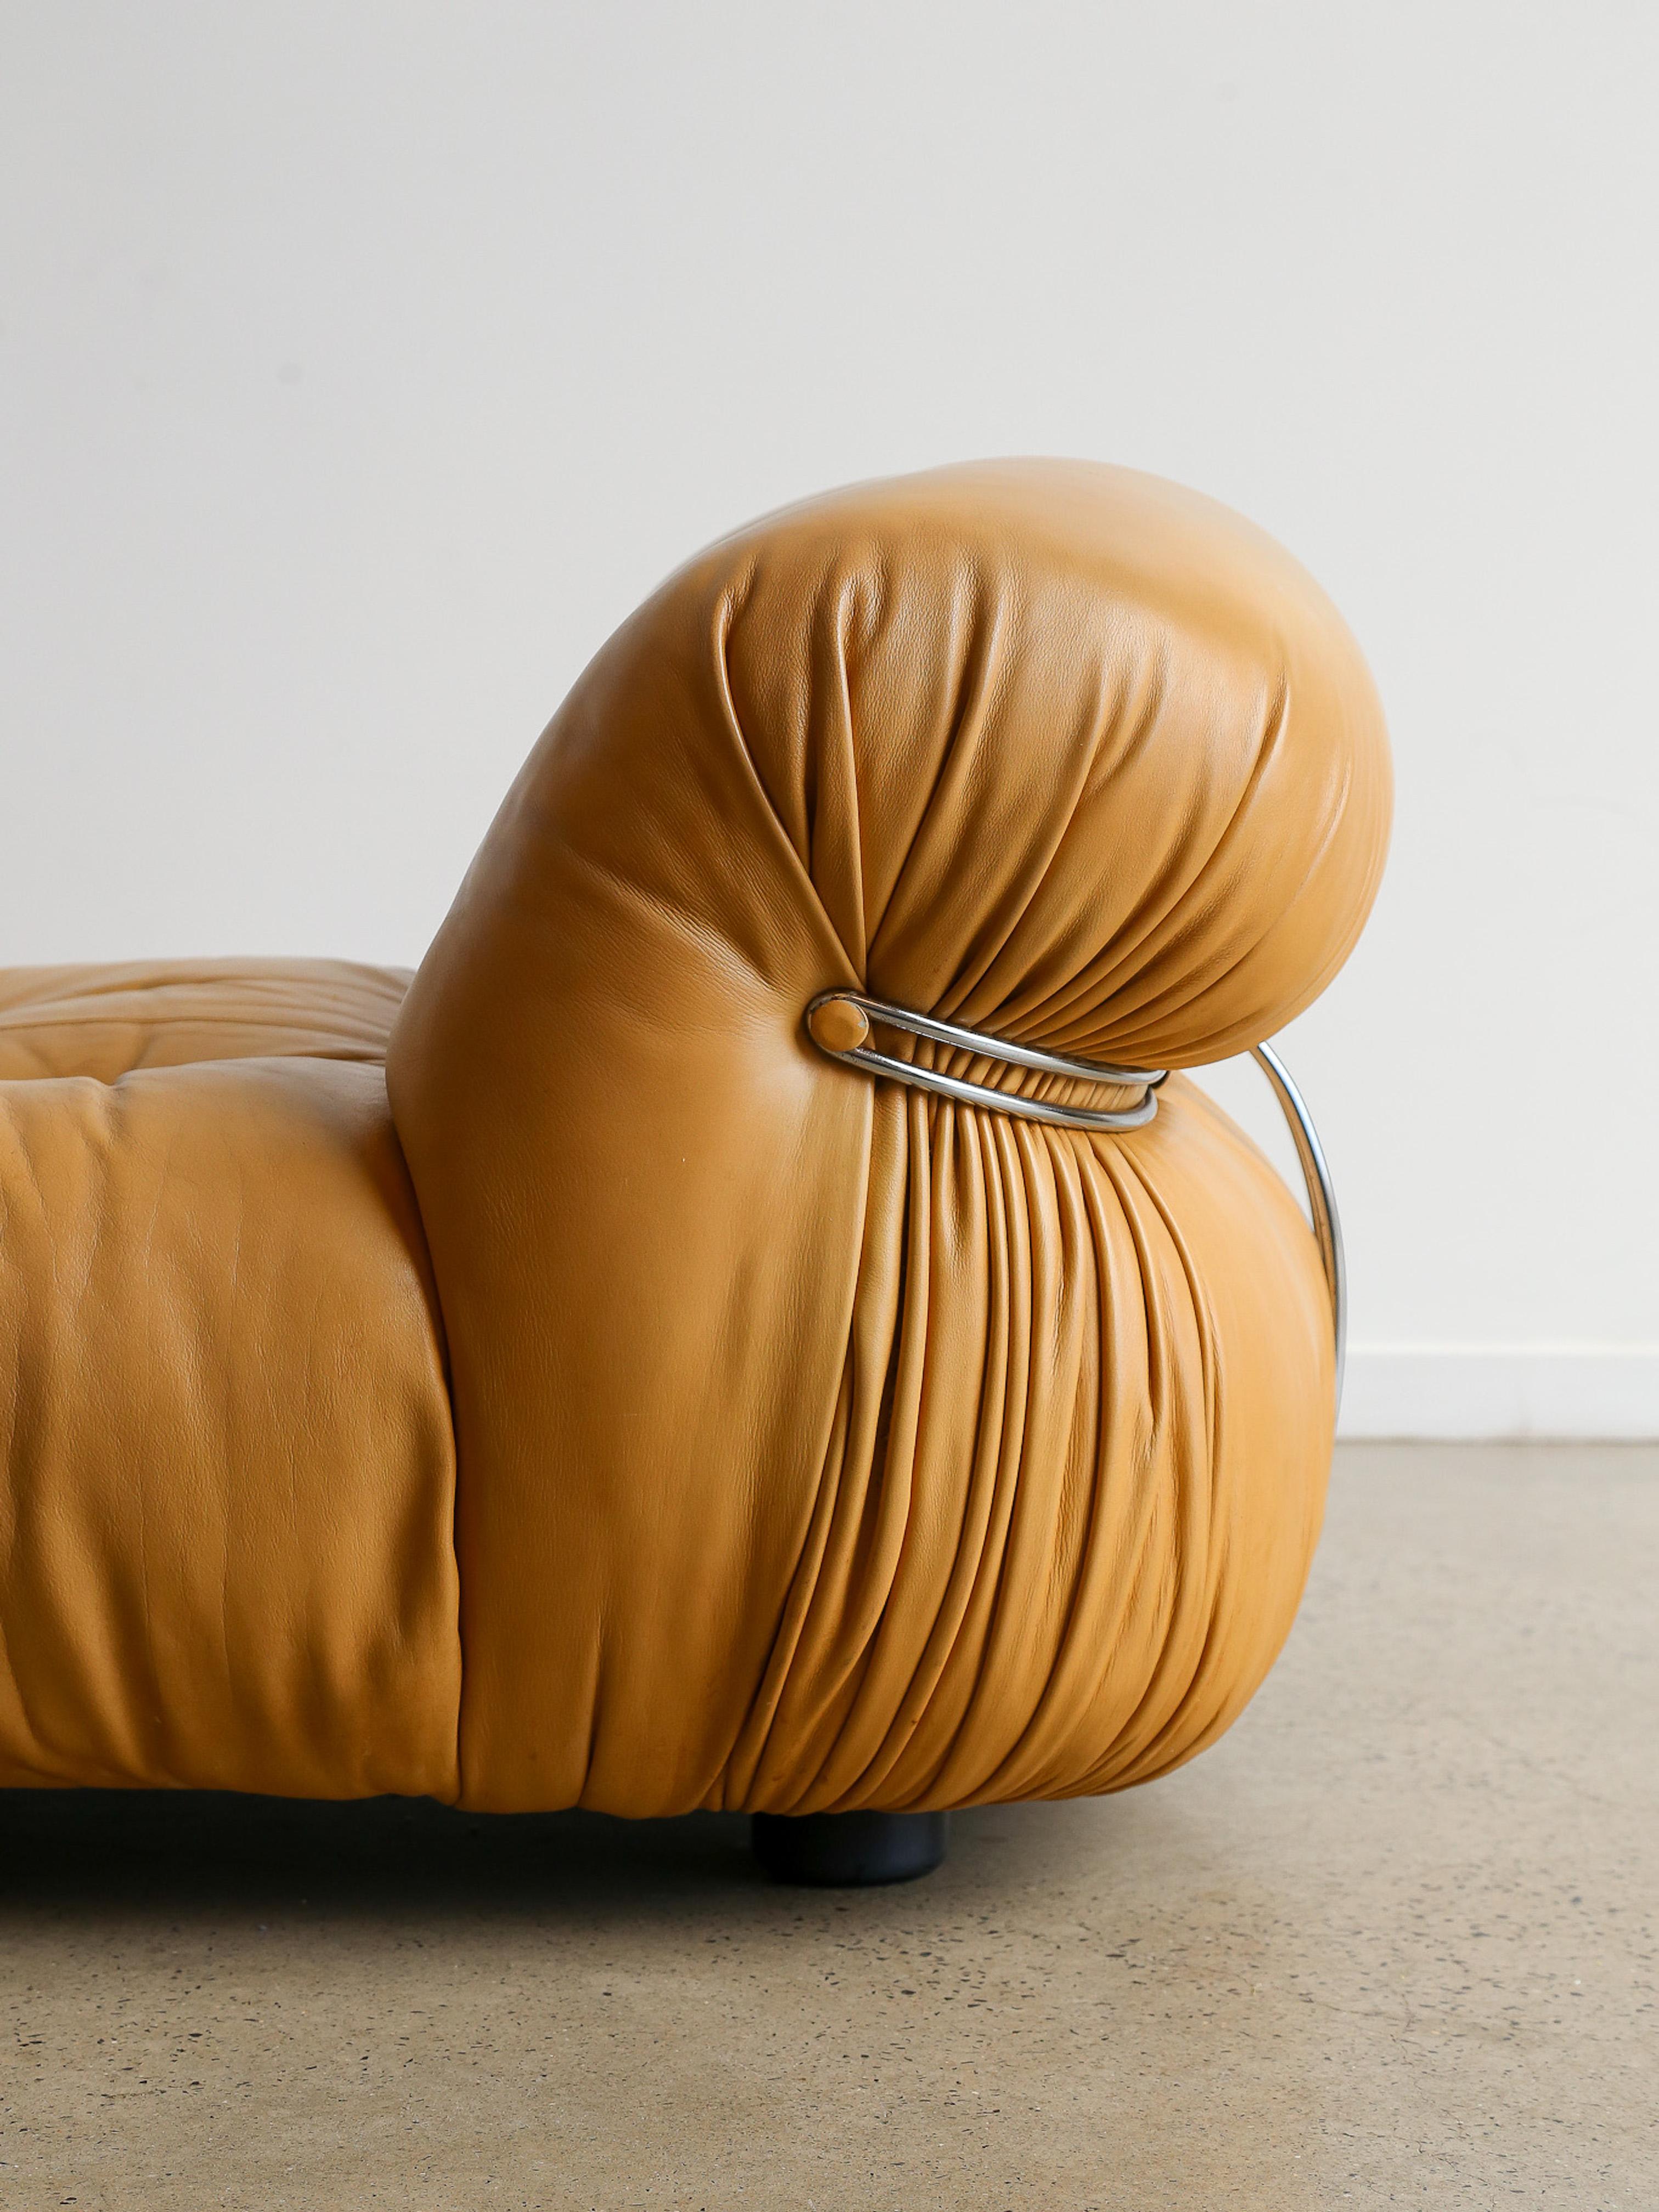 Soriana Loungesessel von Afra & Tobia Scarpa für Cassina. Original Leder und verchromter Stahl. Ikonische Chaiselongue des italienischen Designerpaars Afra & Tobia Scarpa, 1969 entworfen und von Cassina hergestellt. Das Soriana-Design ist zu einem